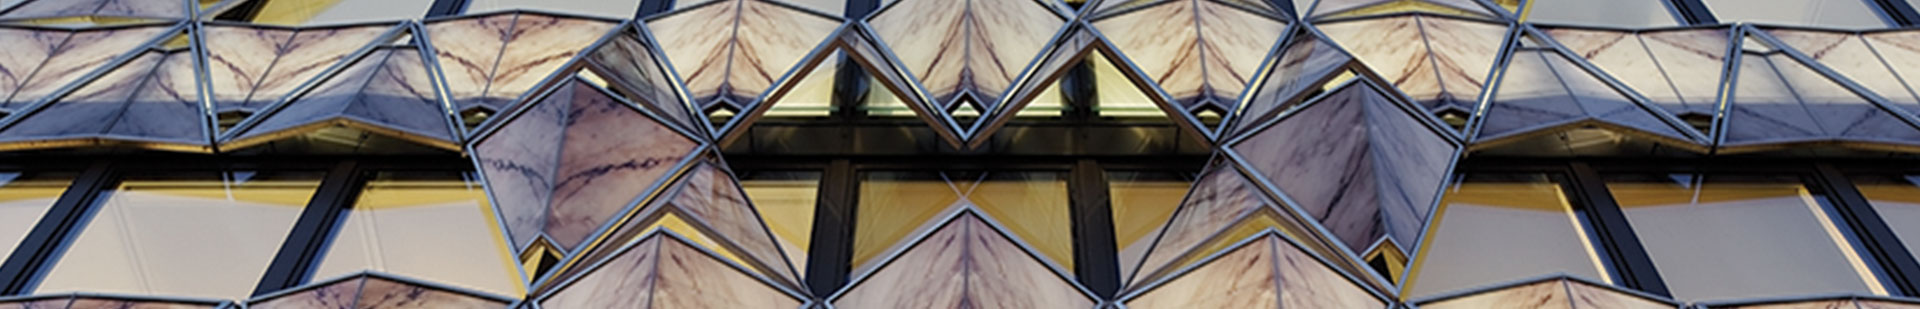 חלונות ויטראז לבית הכנסת